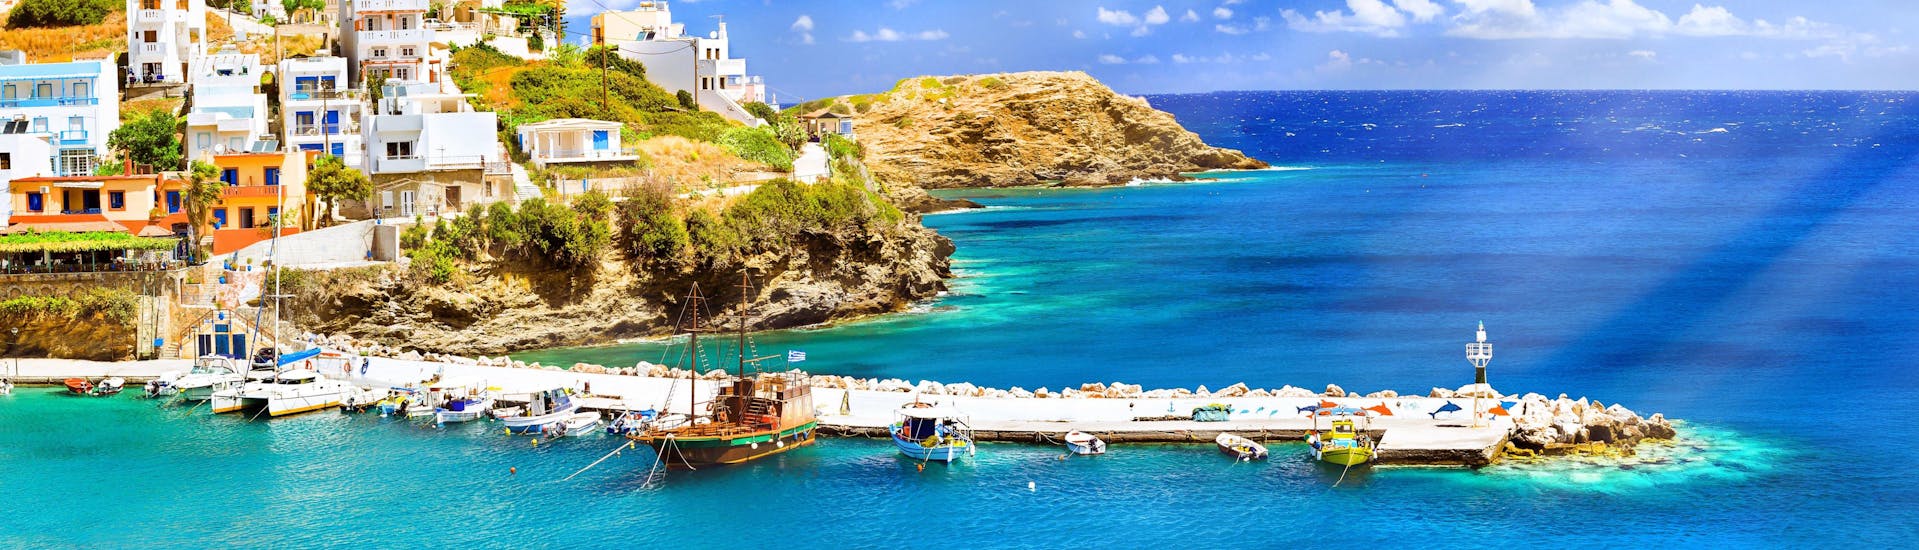 Ein Blick auf die traumhafte Küste Kretas die man bei einer Bootstour ab Heraklion bewundern kann.